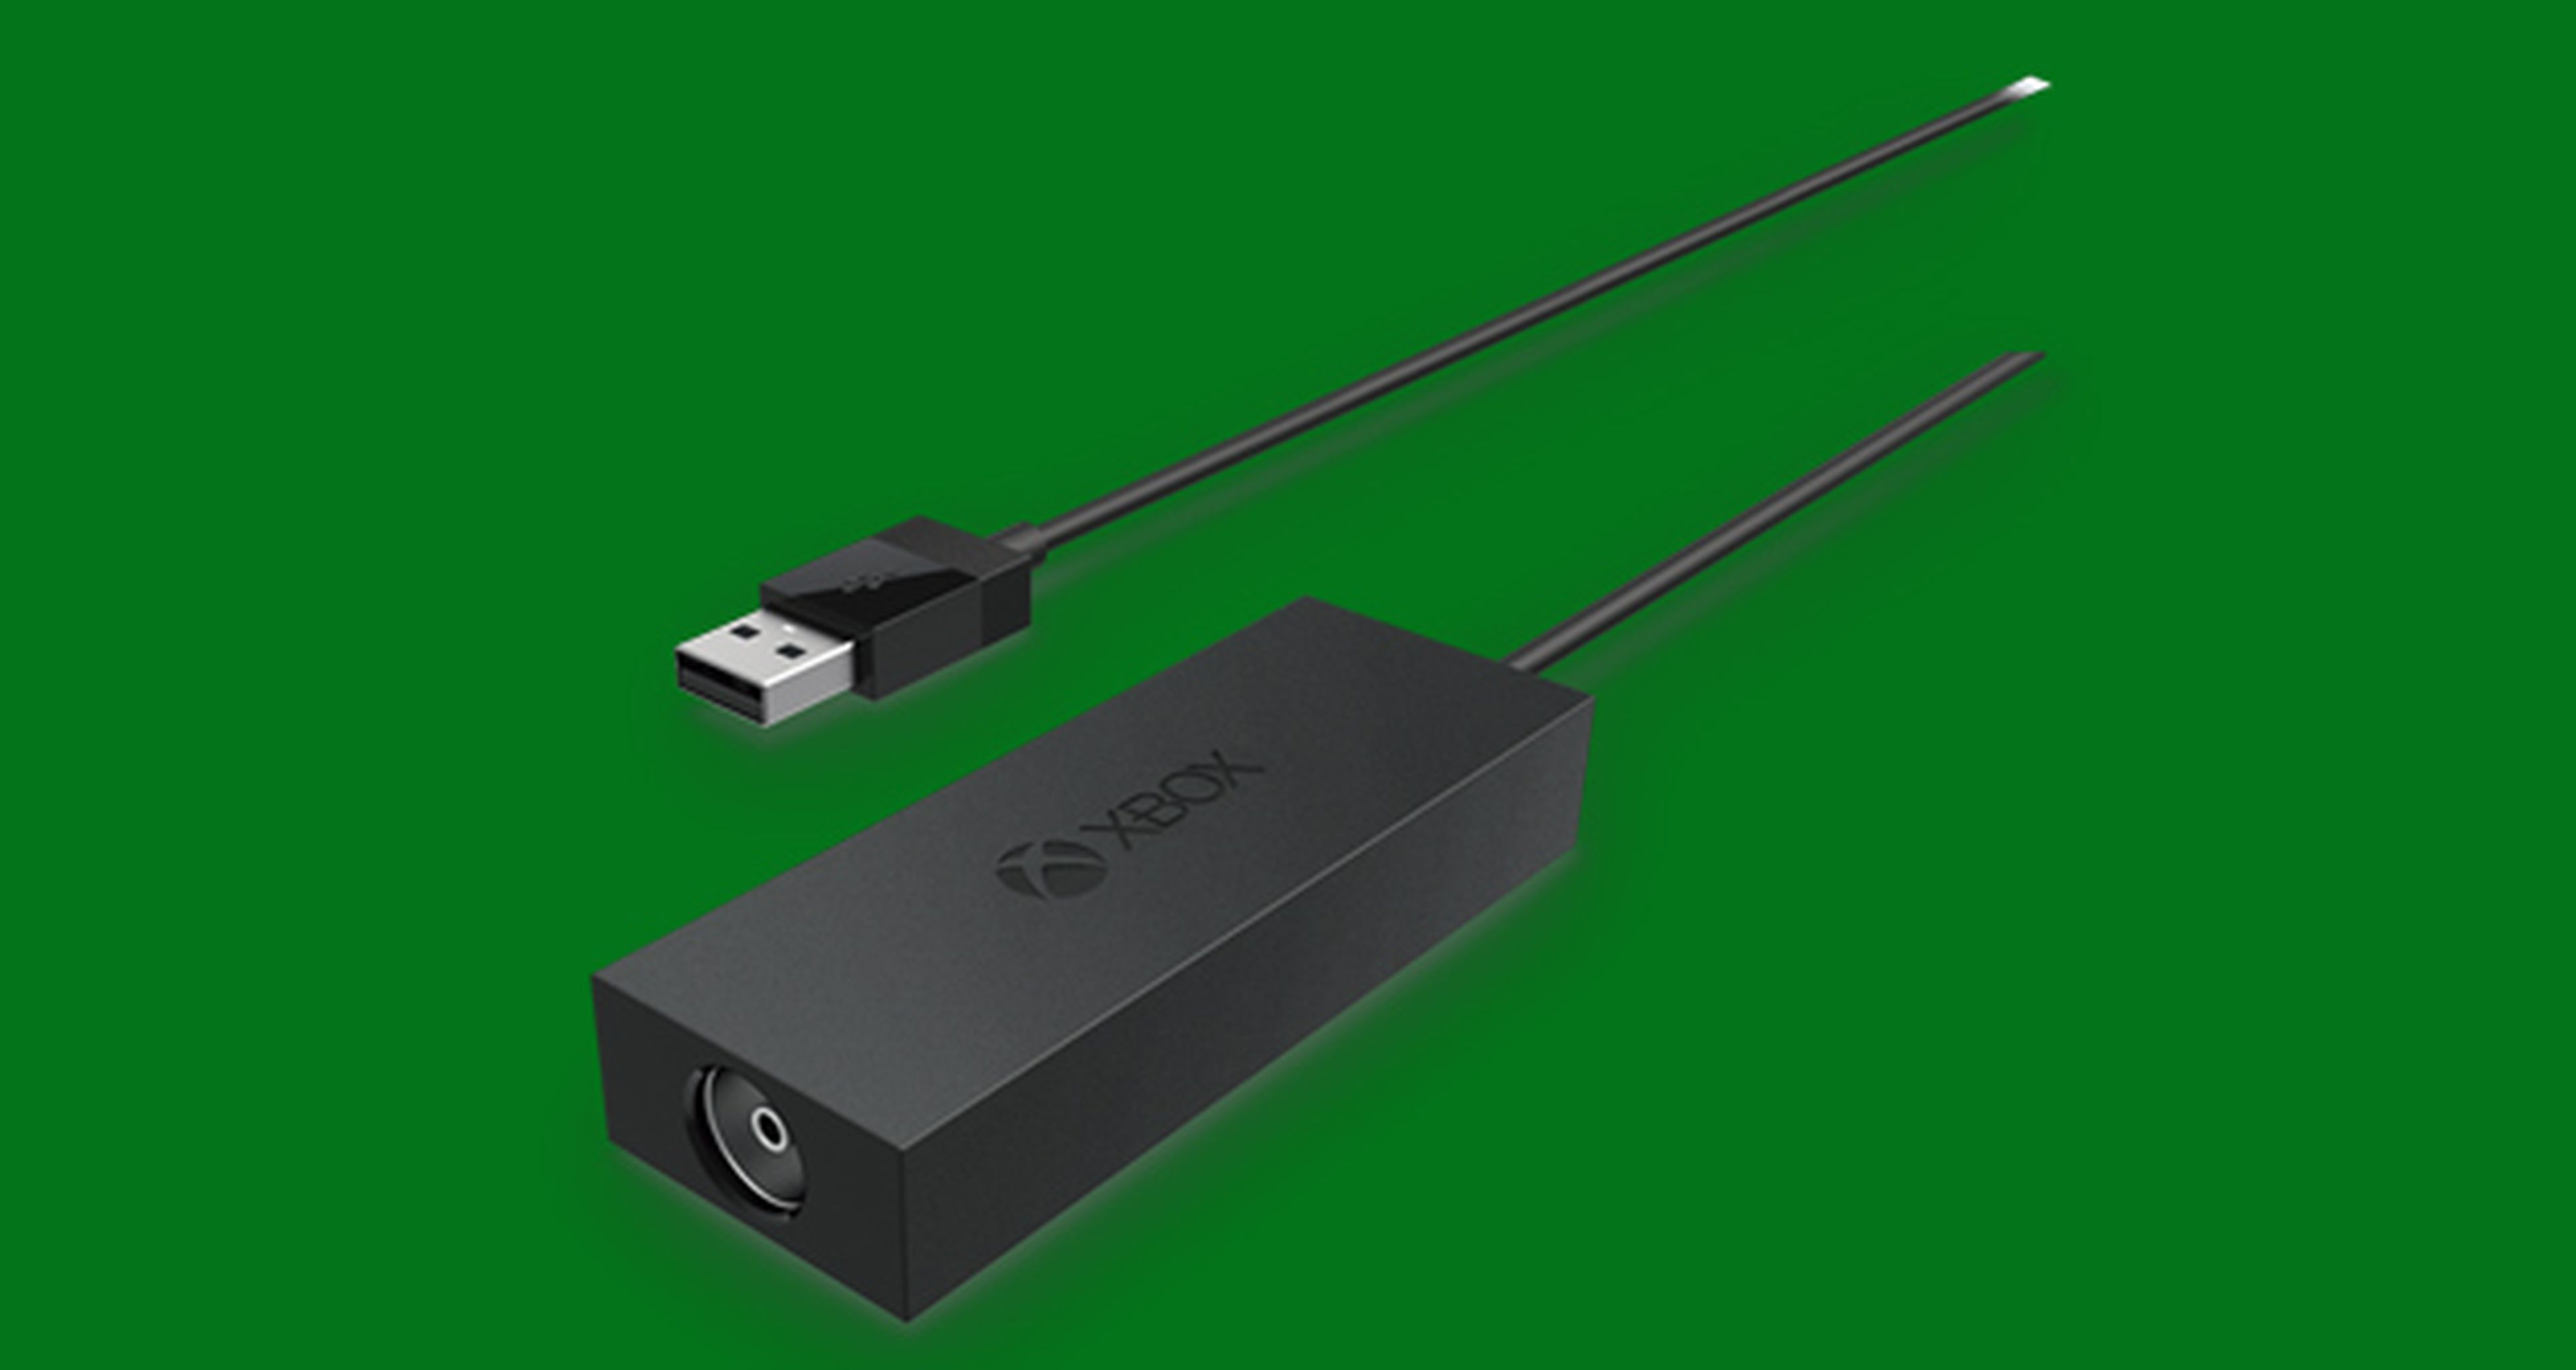 Precio y disponibilidad del sintonizador de TV de Xbox One en España